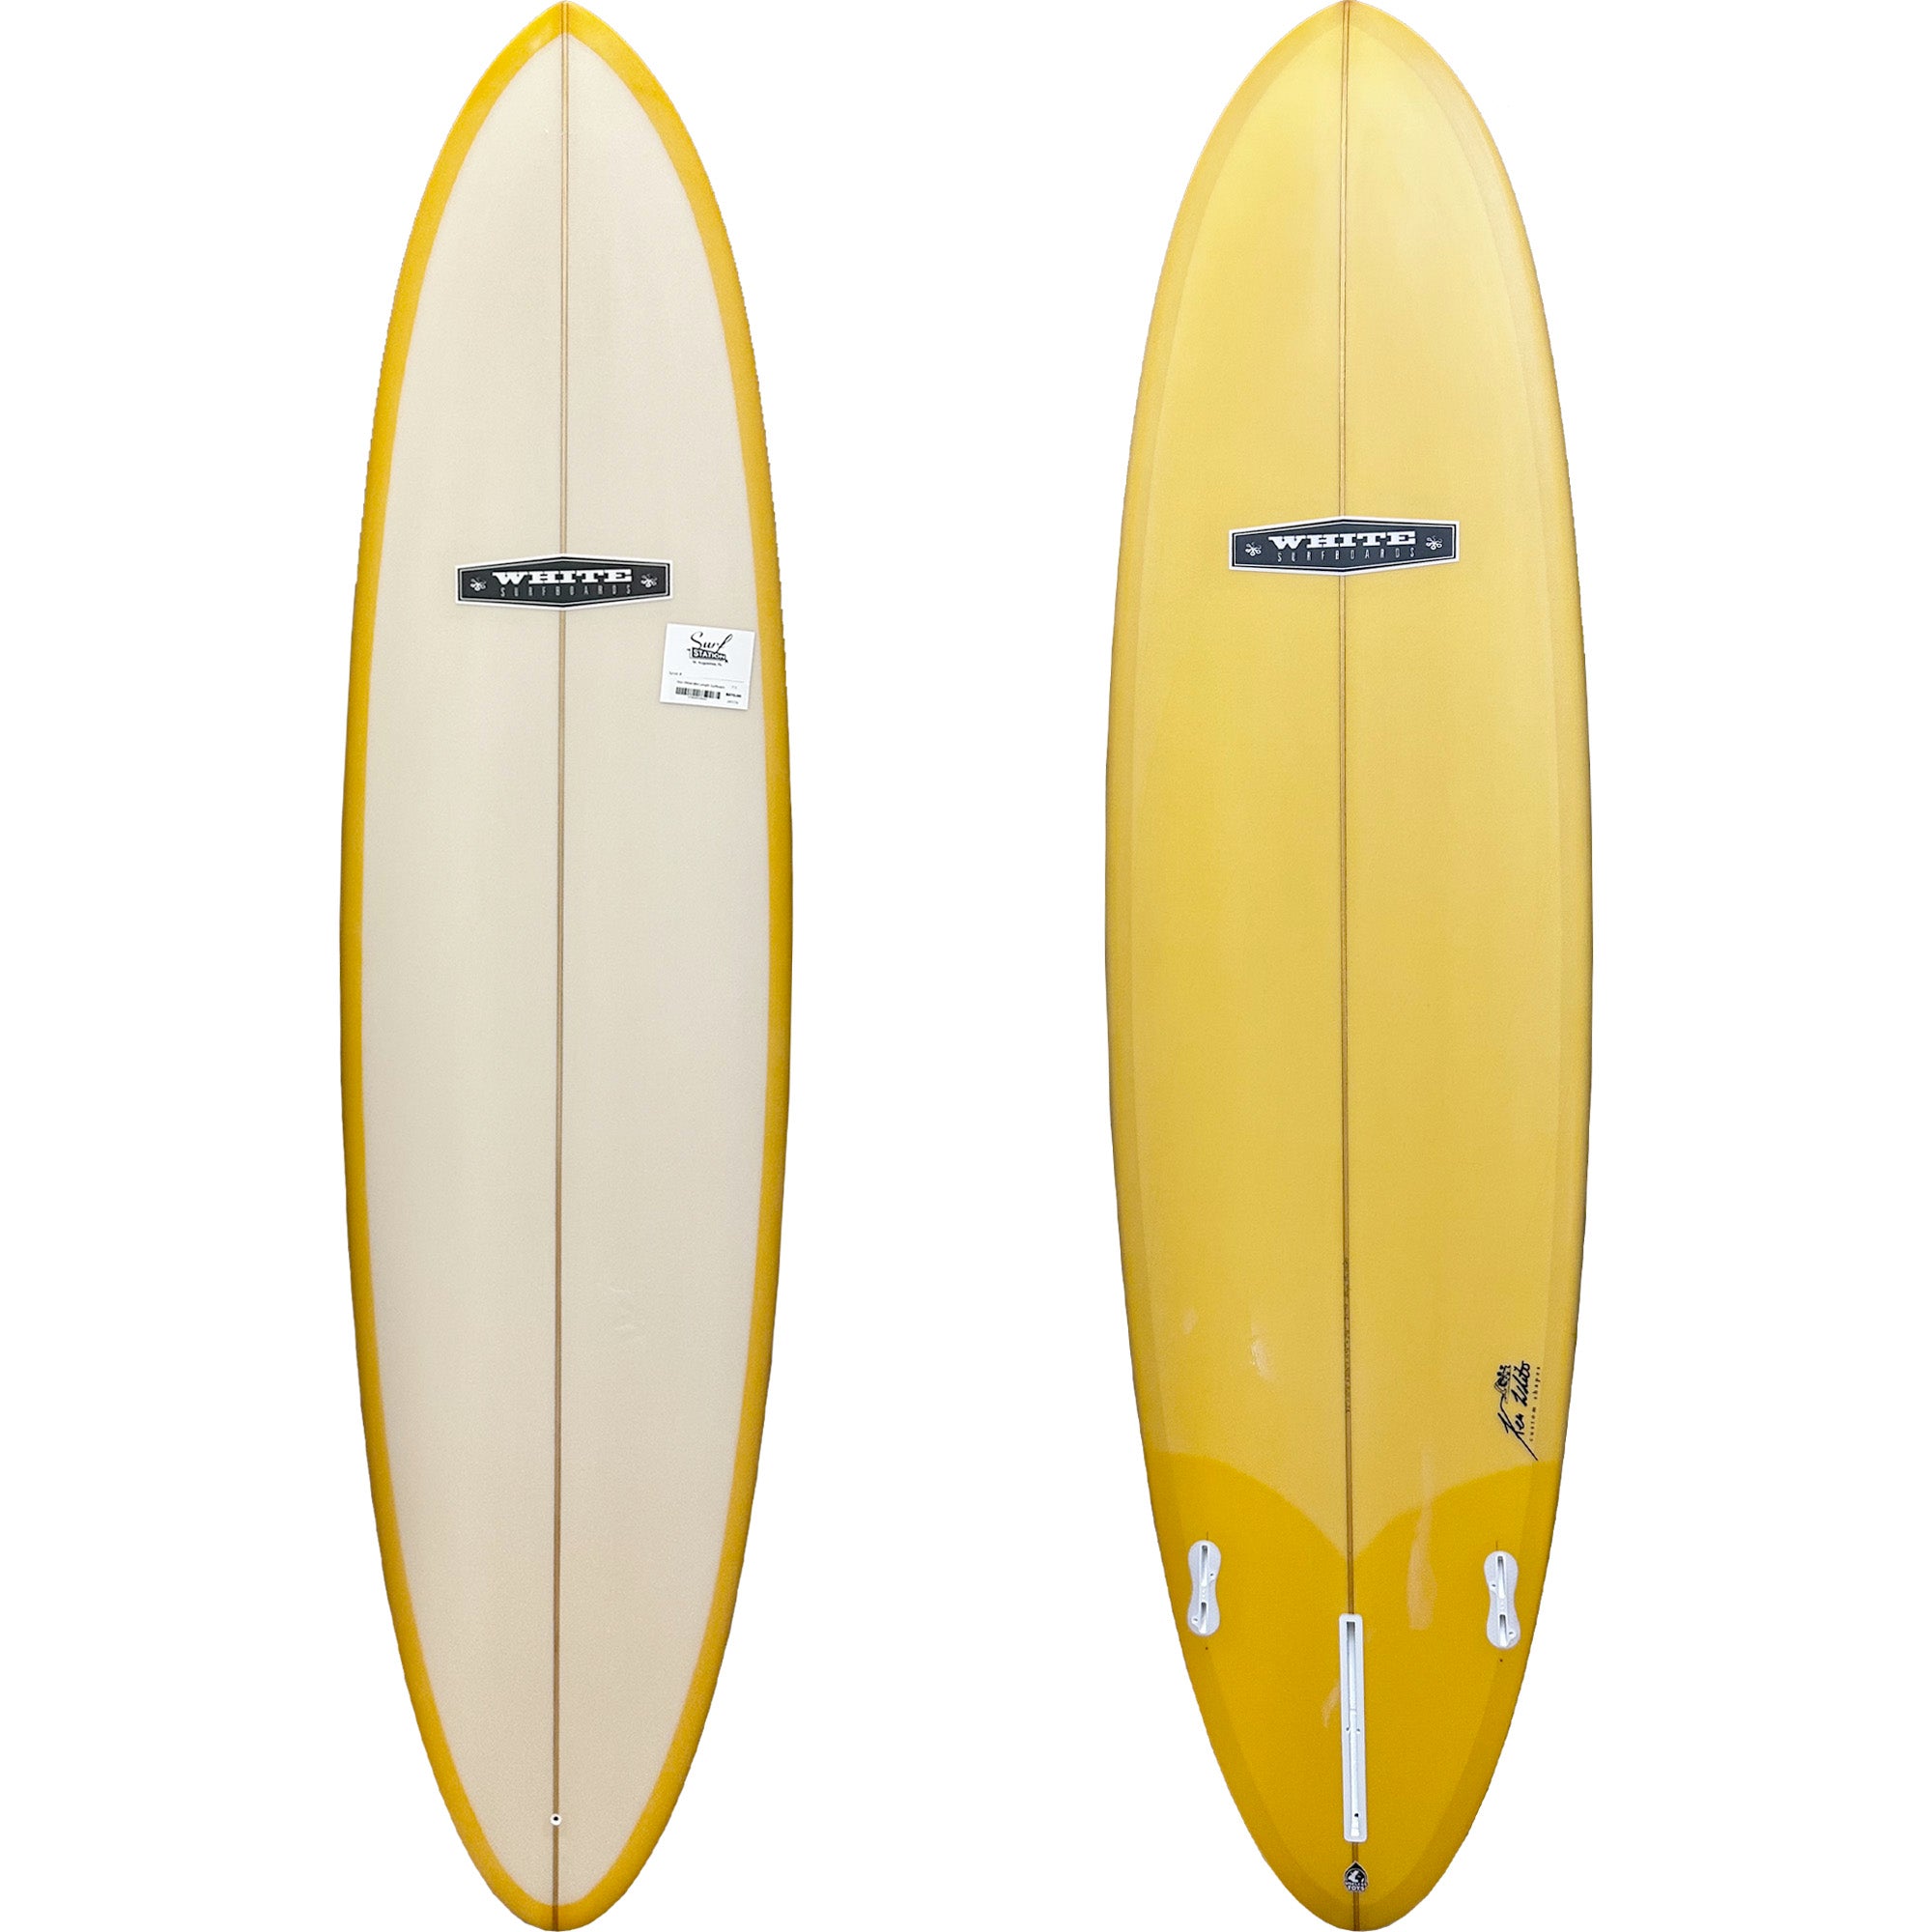 Ken White Mid Length Surfboard